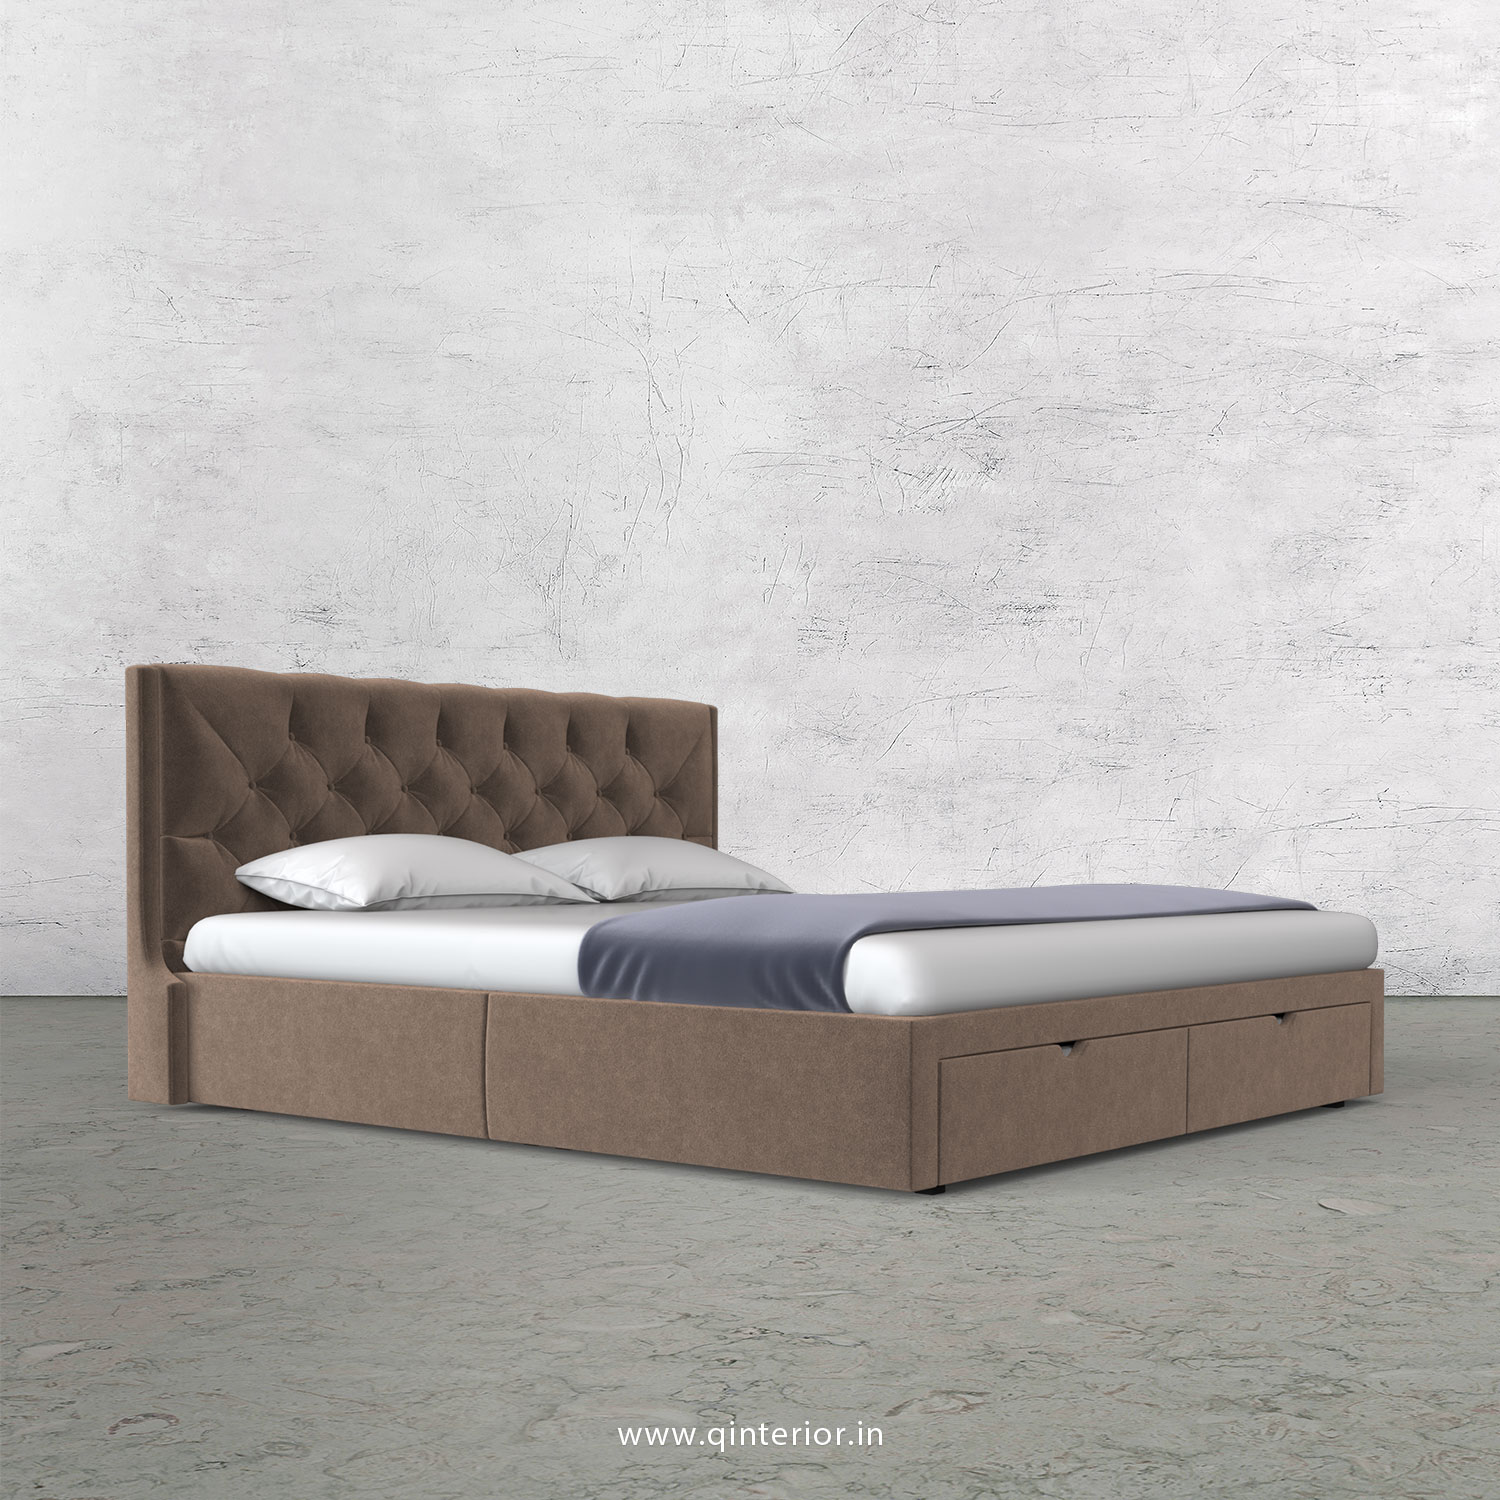 Scorpius Queen Storage Bed in Velvet Fabric - QBD001 VL02